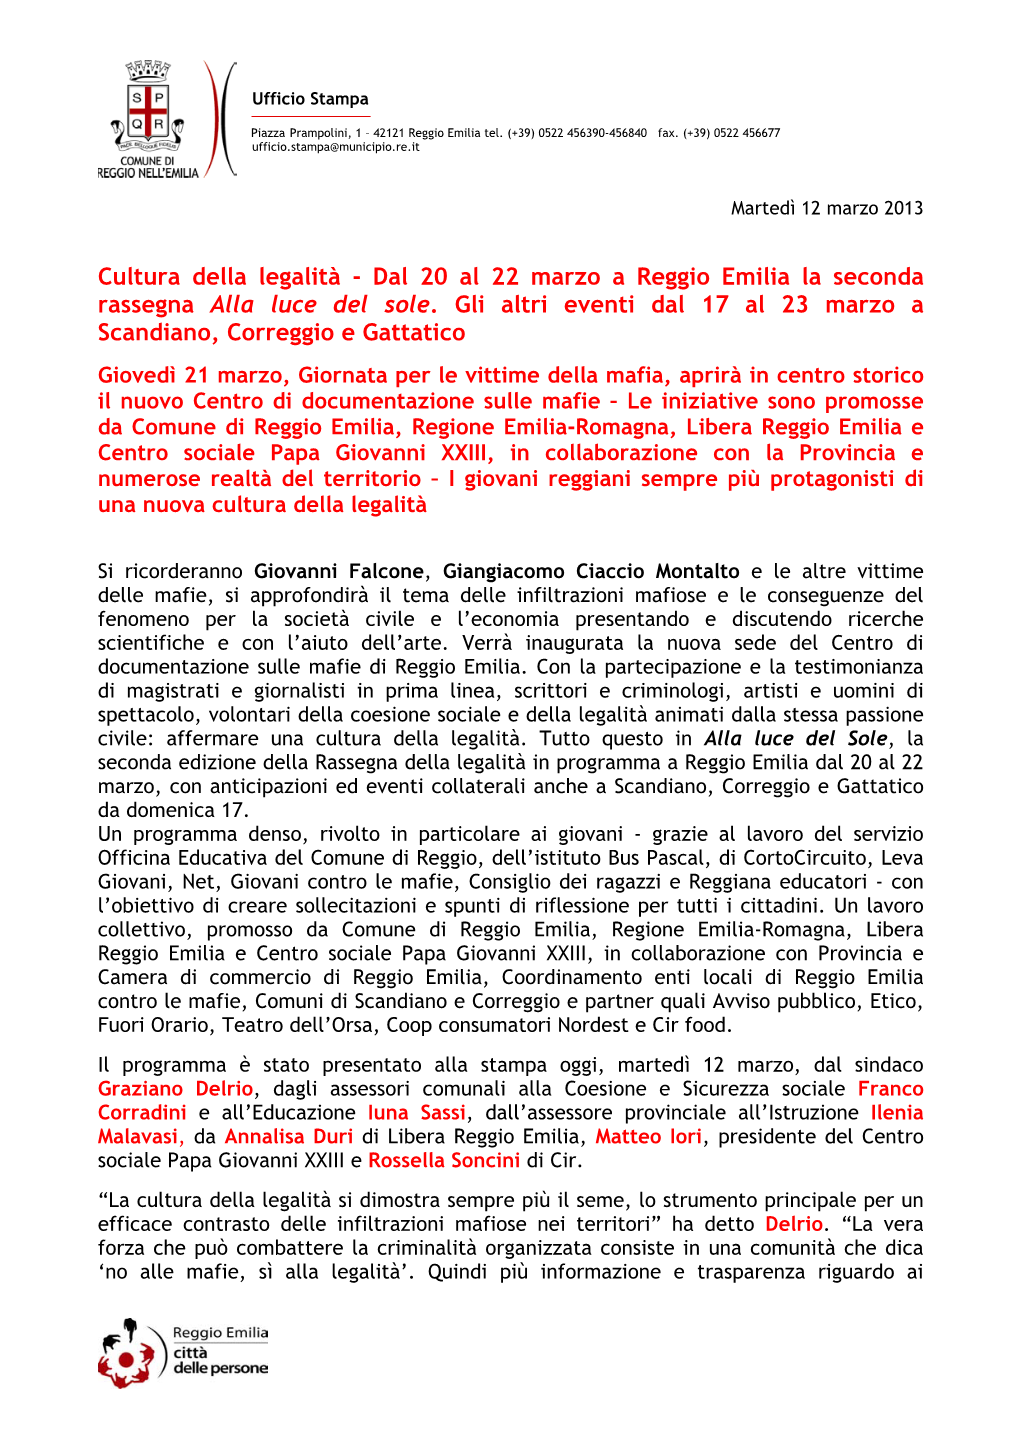 Cultura Della Legalità - Dal 20 Al 22 Marzo a Reggio Emilia La Seconda Rassegna Alla Luce Del Sole